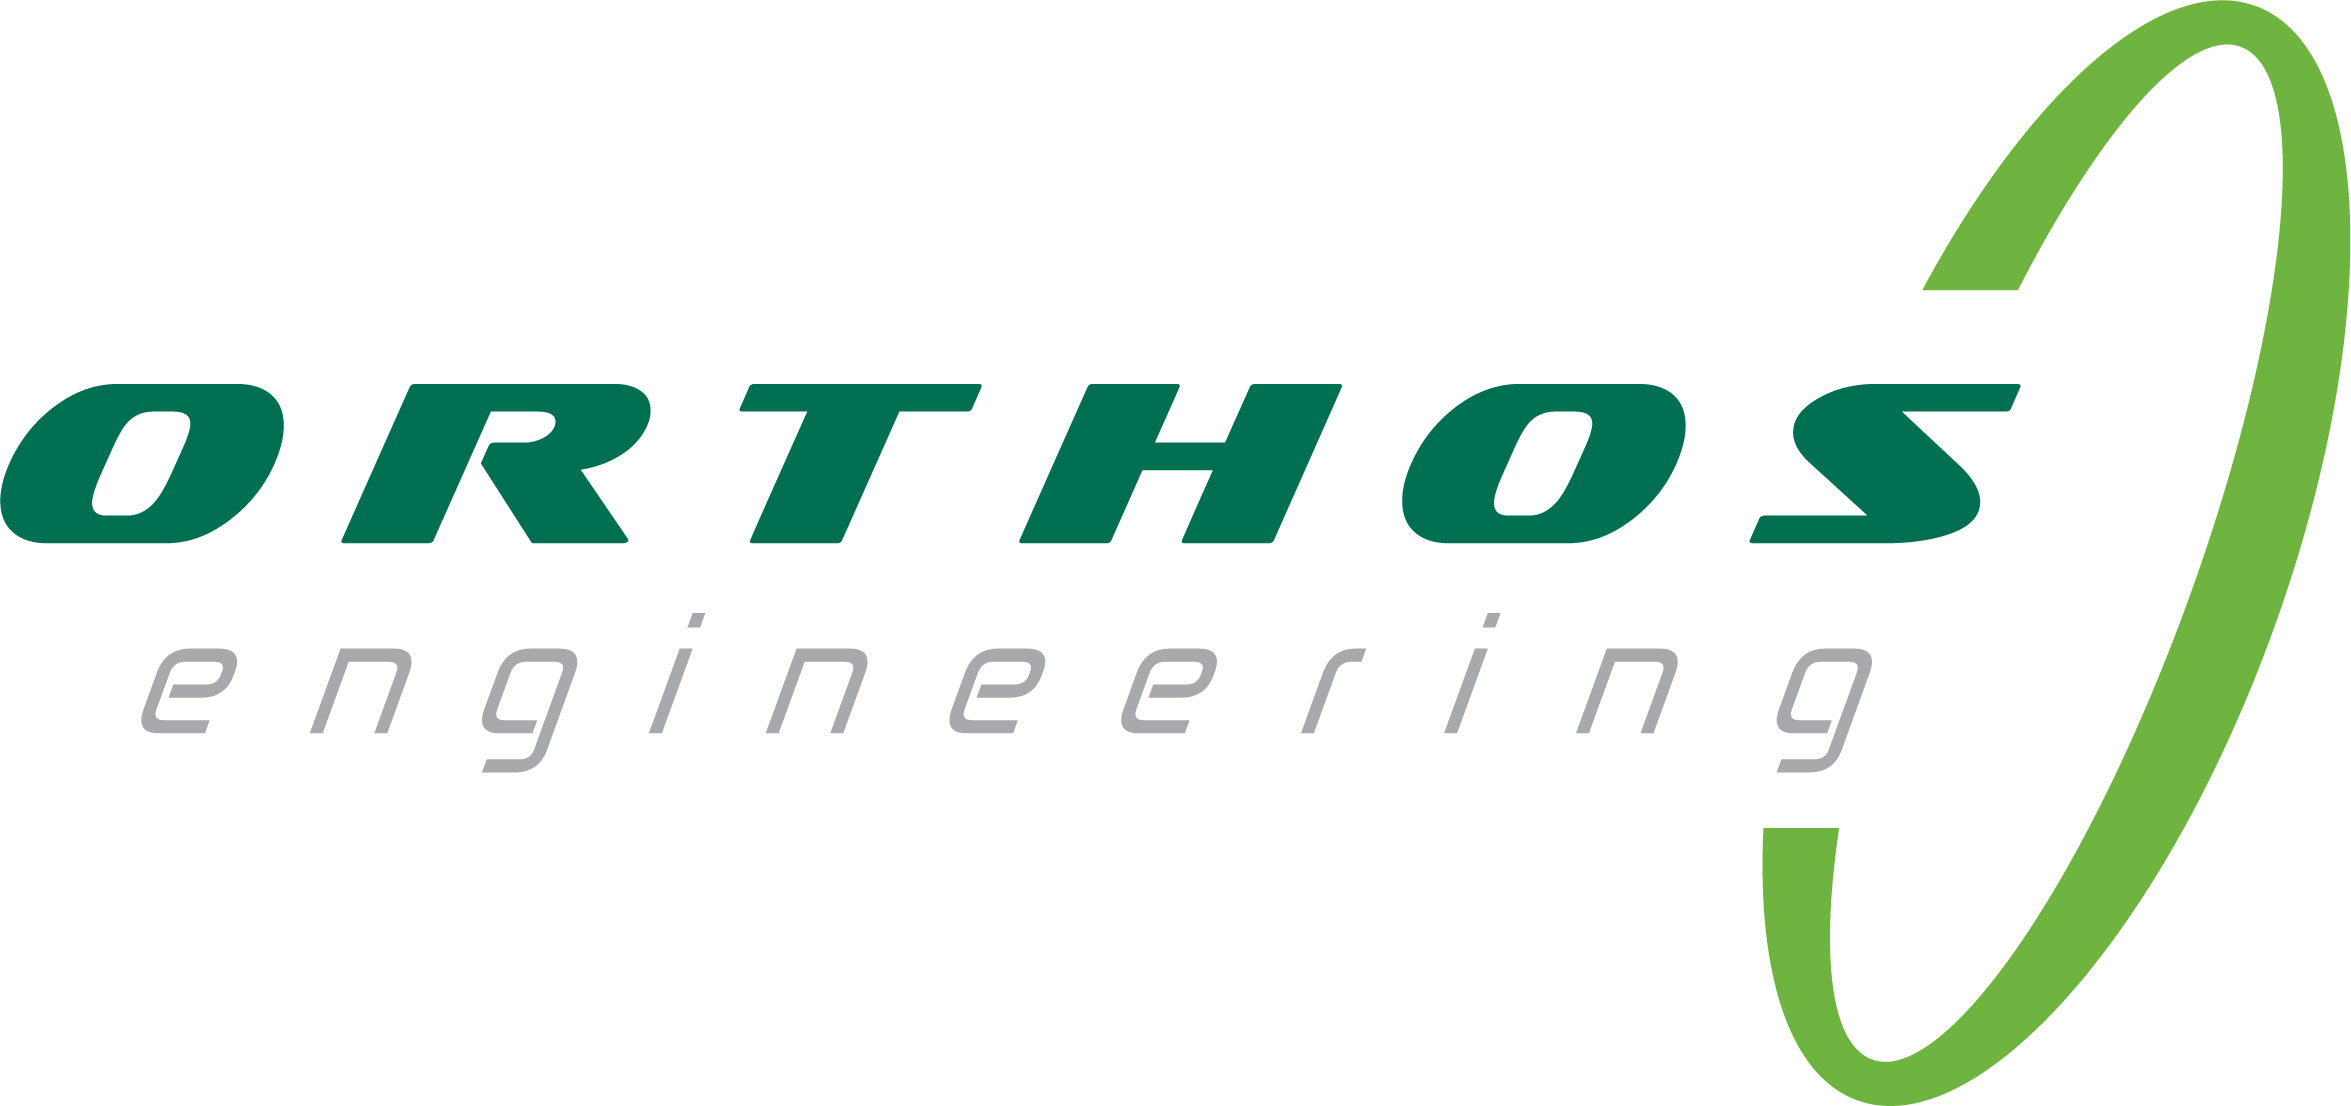 Orthos Engineering